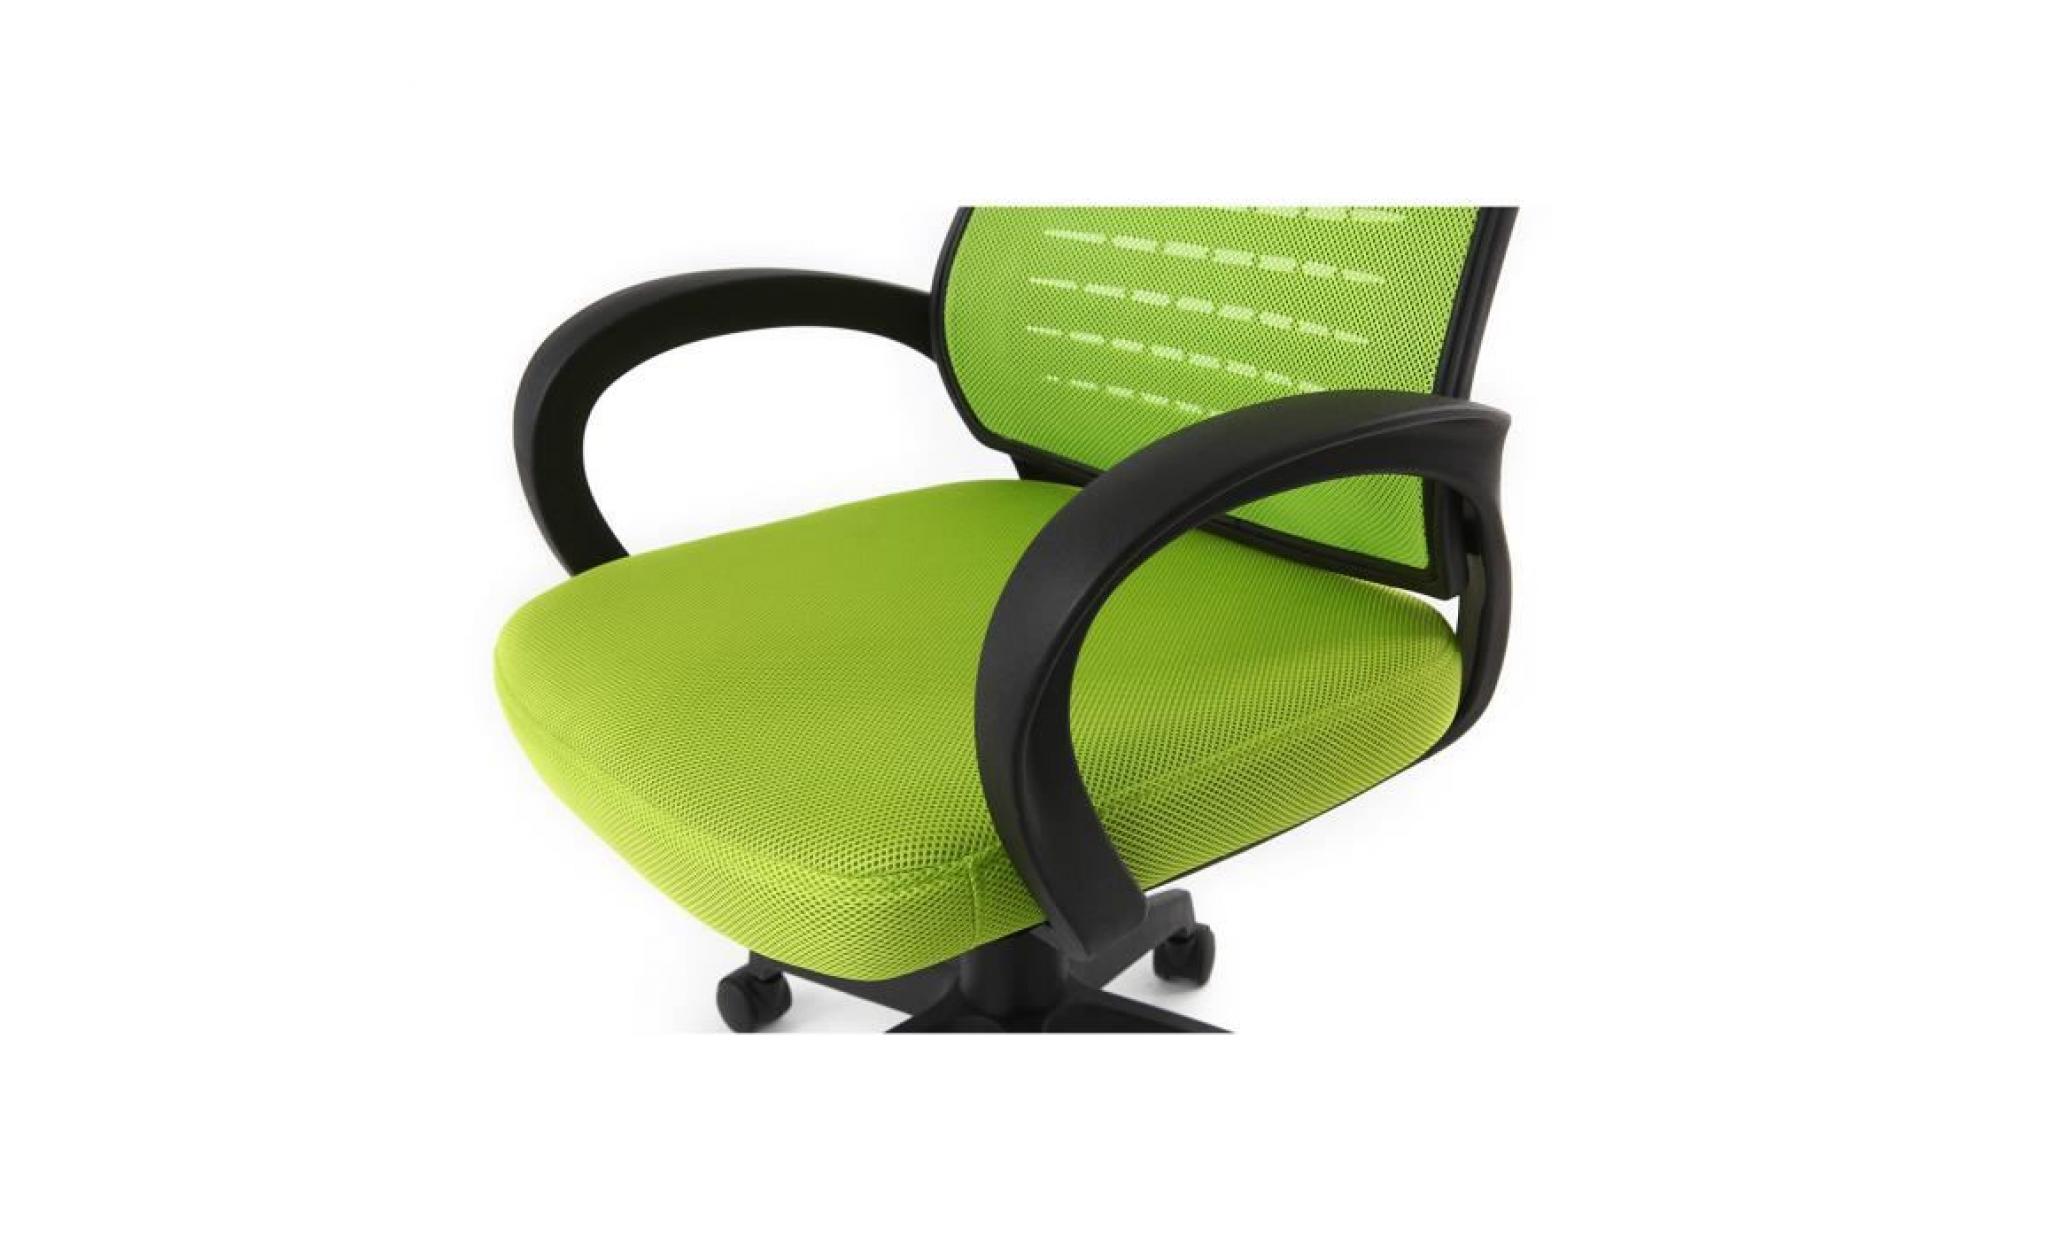 fauteuil de bureau design mesh vert junio pas cher